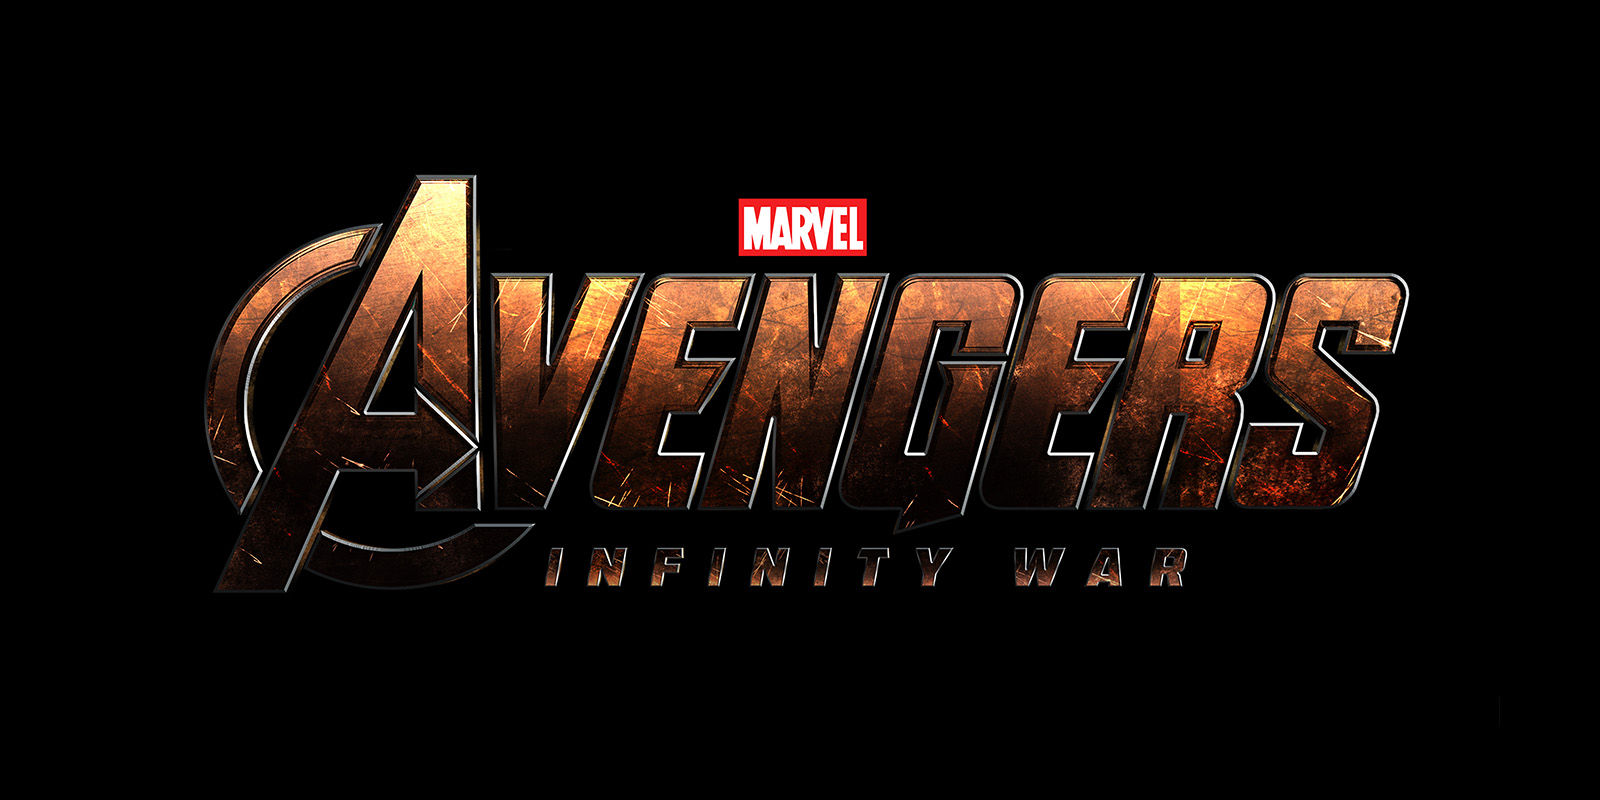 Al parecer ya conocemos el nuevo logo de Avengers